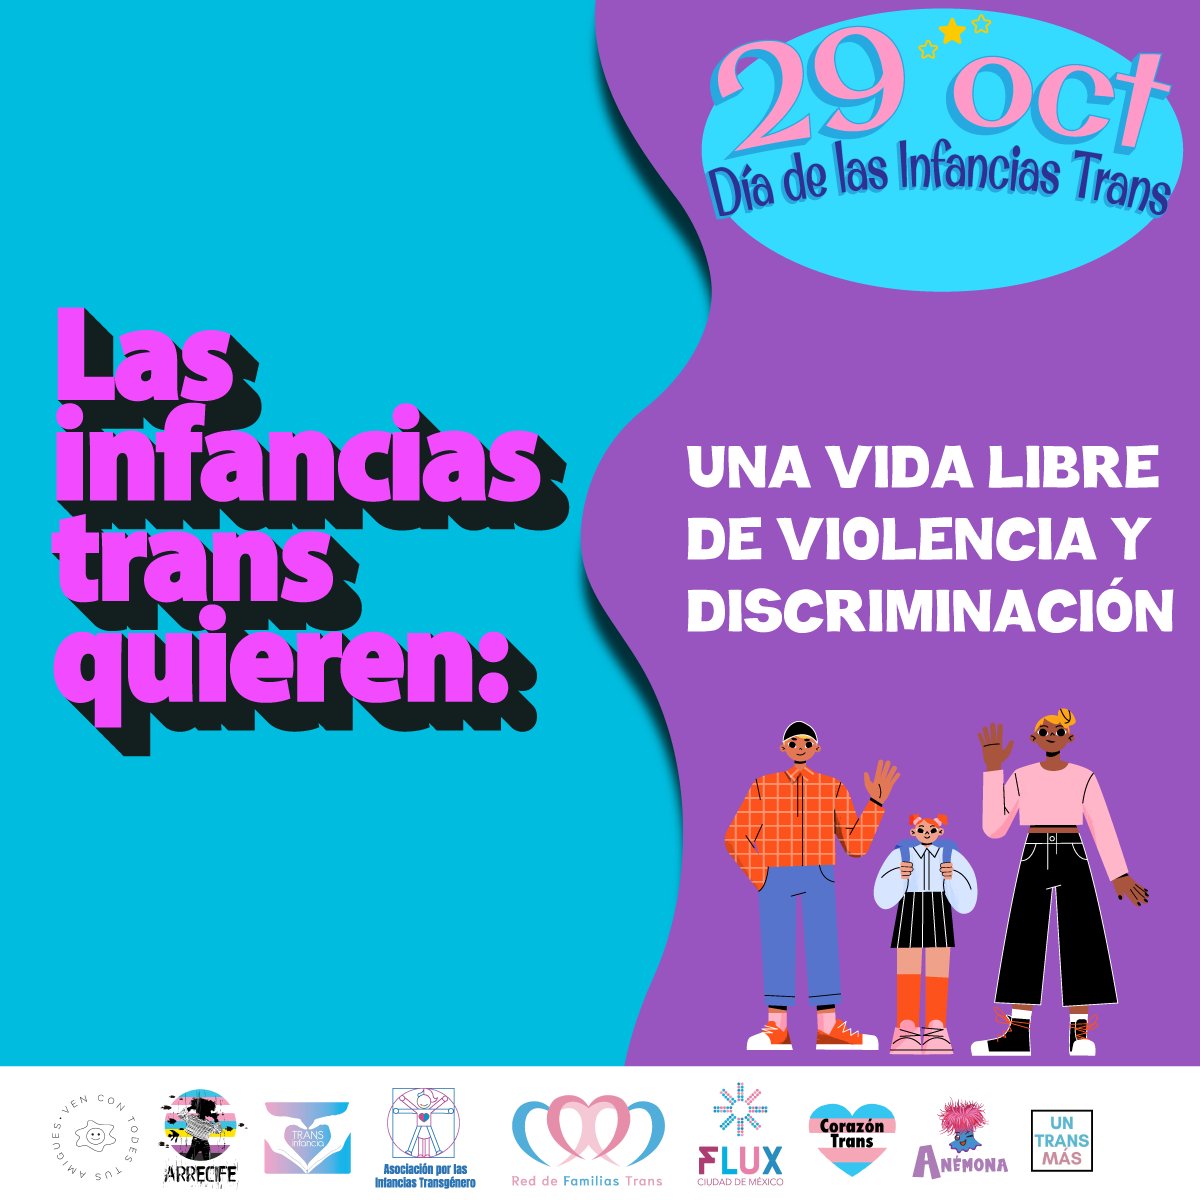 Las infancias trans son más que válidas y merecen respeto 🏳️‍⚧️🏳️‍⚧️🏳️‍⚧️ Hoy celebramos el Día de las Infancias Trans y deseamos que siempre sean escuchadas, queridas, protegidas y que su derecho a la identidad sea garantizado y respetado 💖